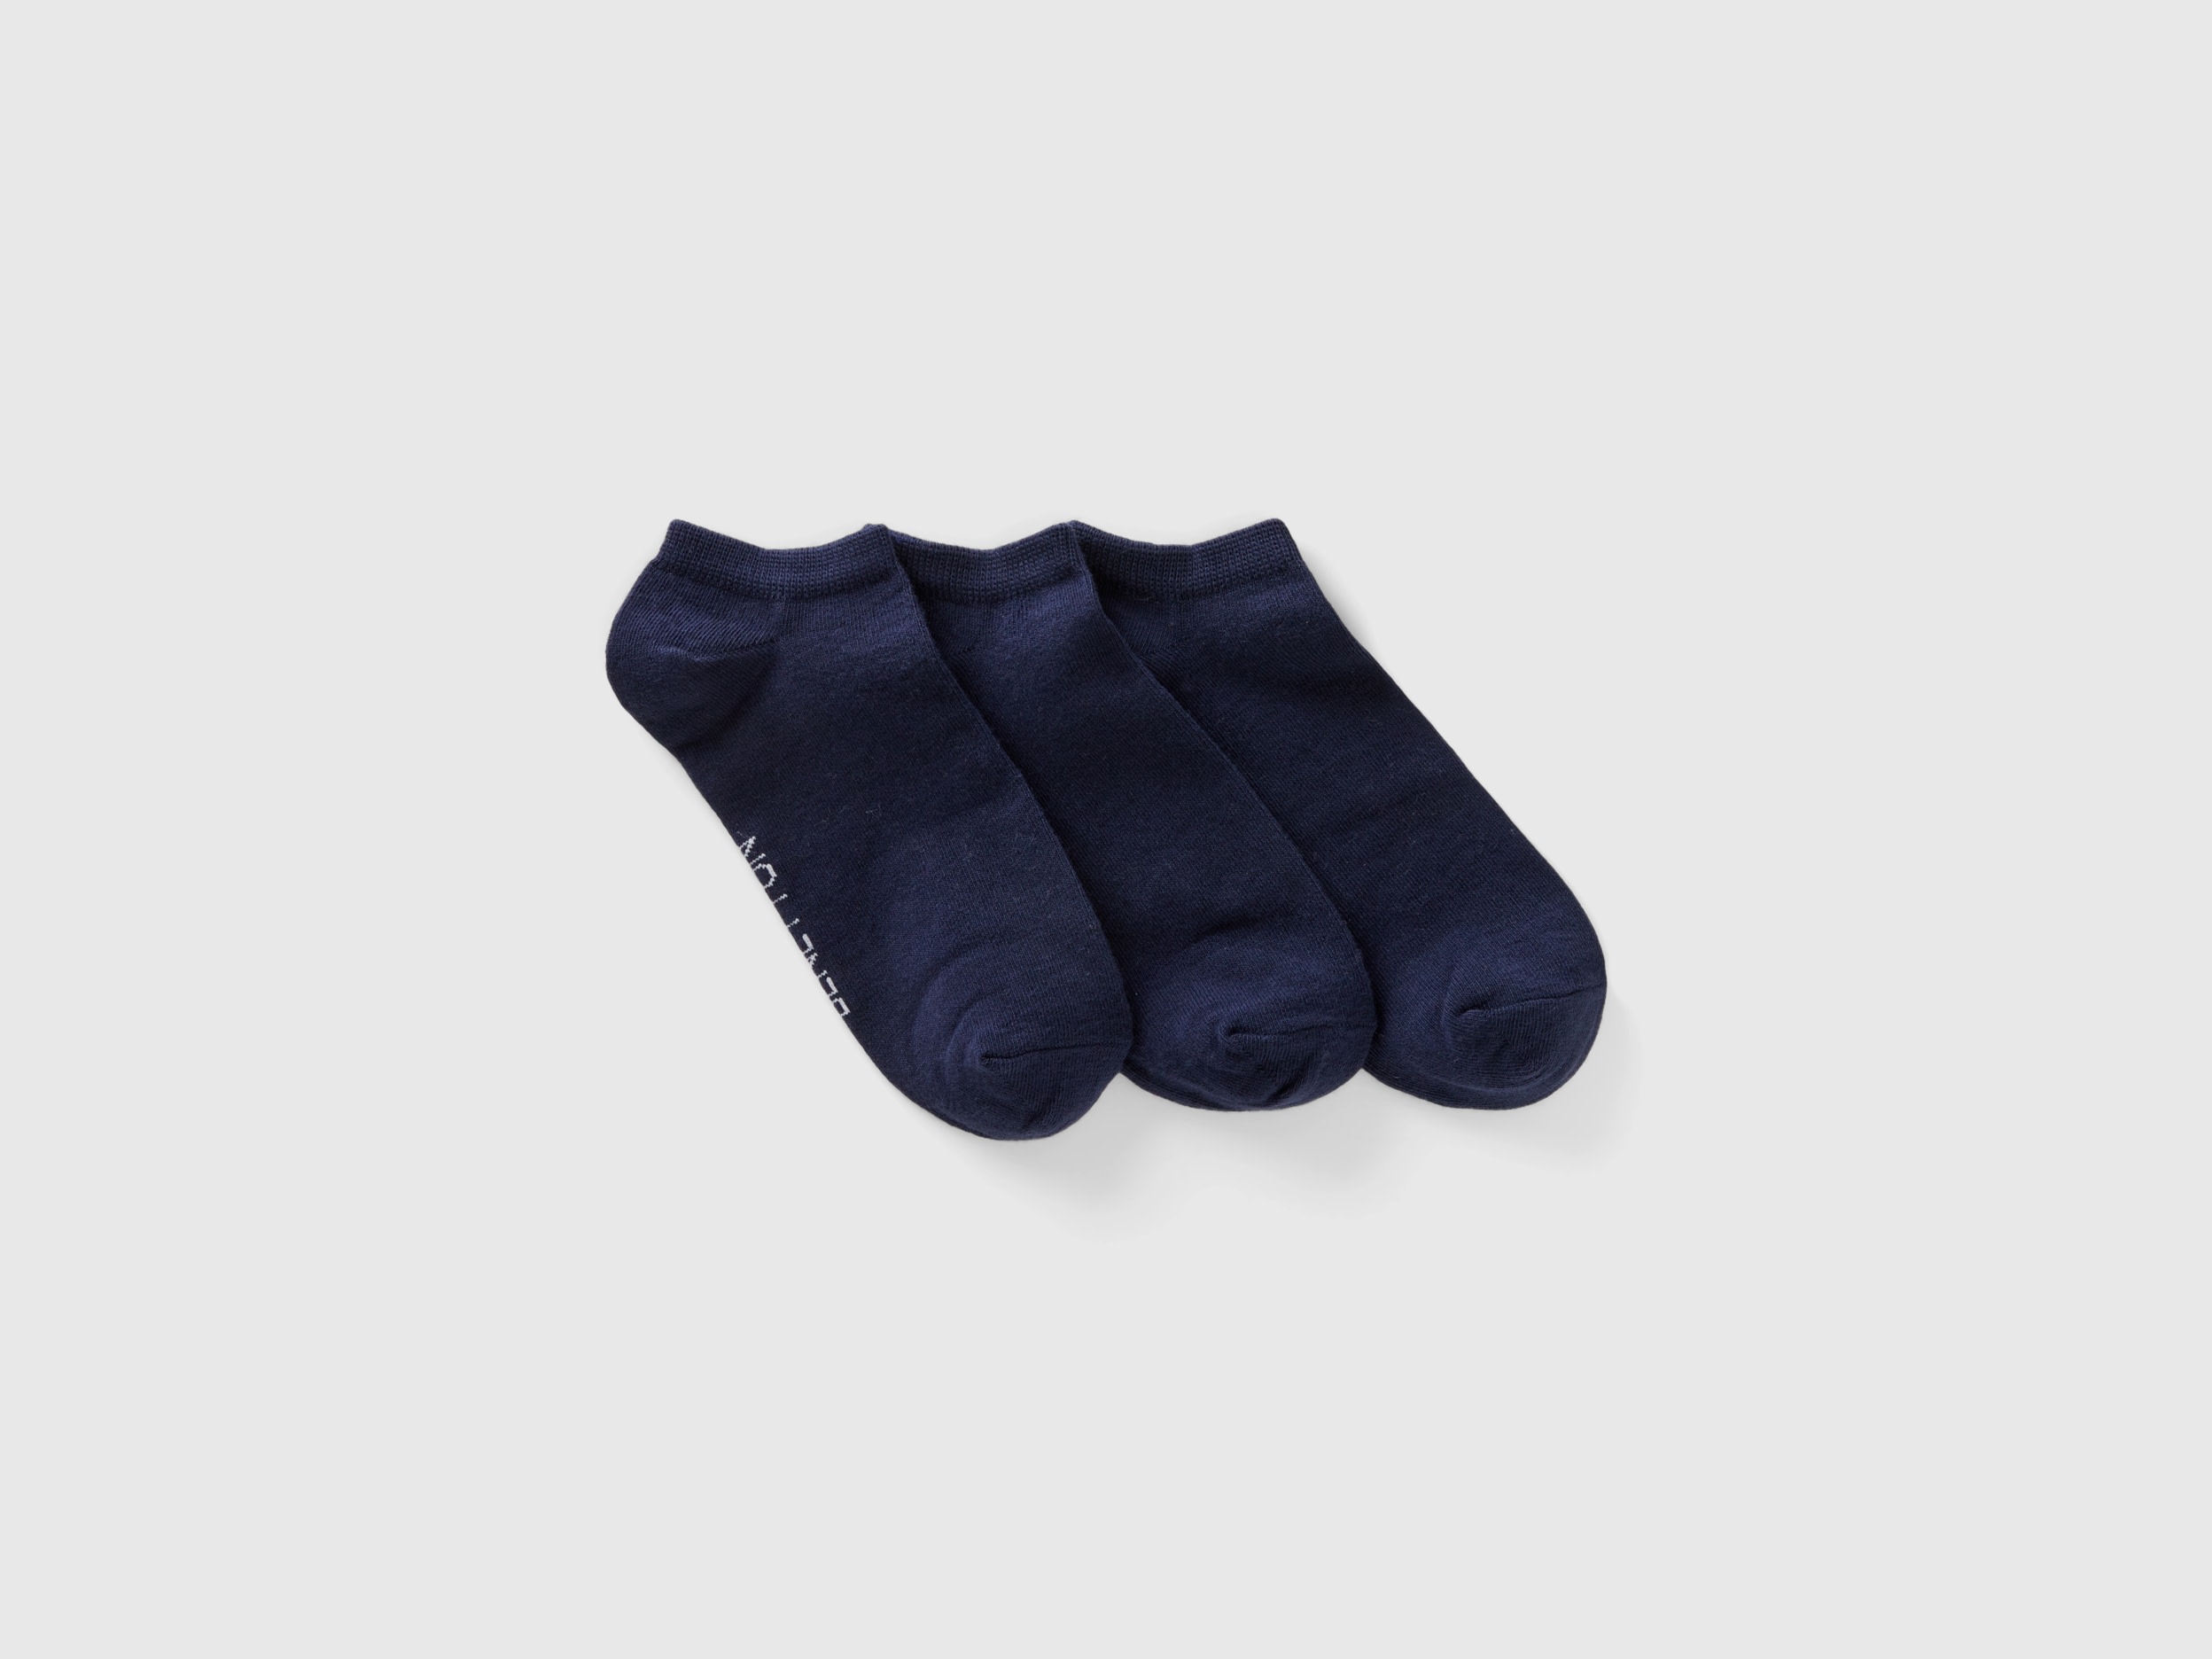 Benetton, Set Of Very Short Socks, size 9-11, Multi-color, Women